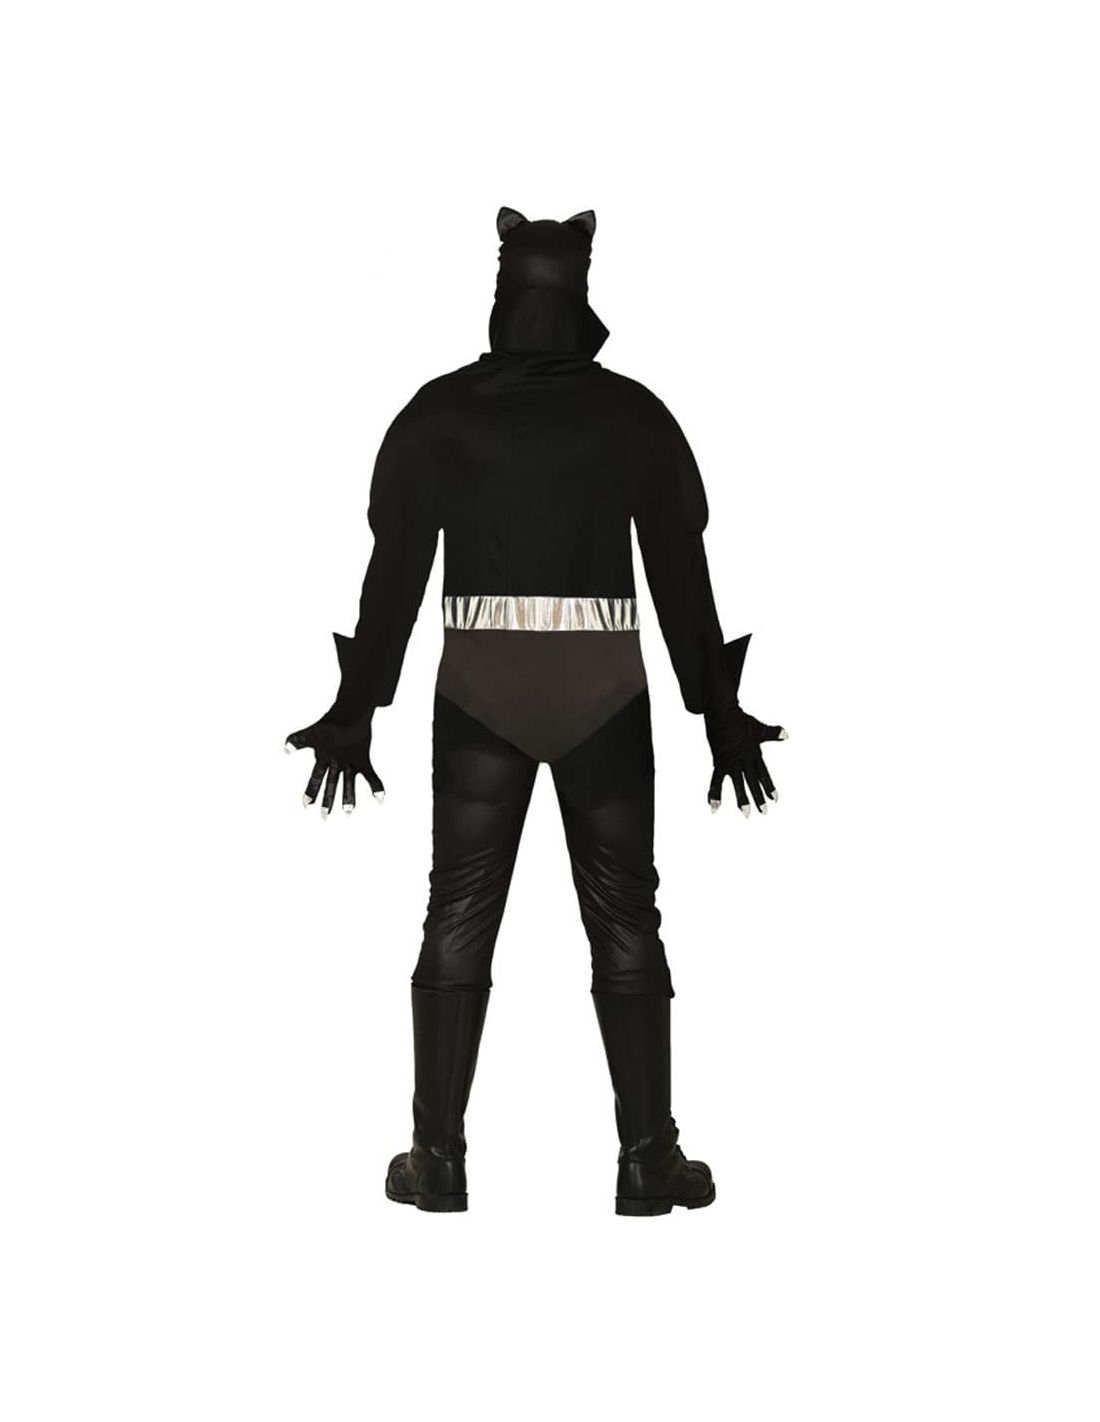 es suficiente Importancia el último Disfraz de Pantera Negra para Adulo | Tienda de Disfraces Online |...